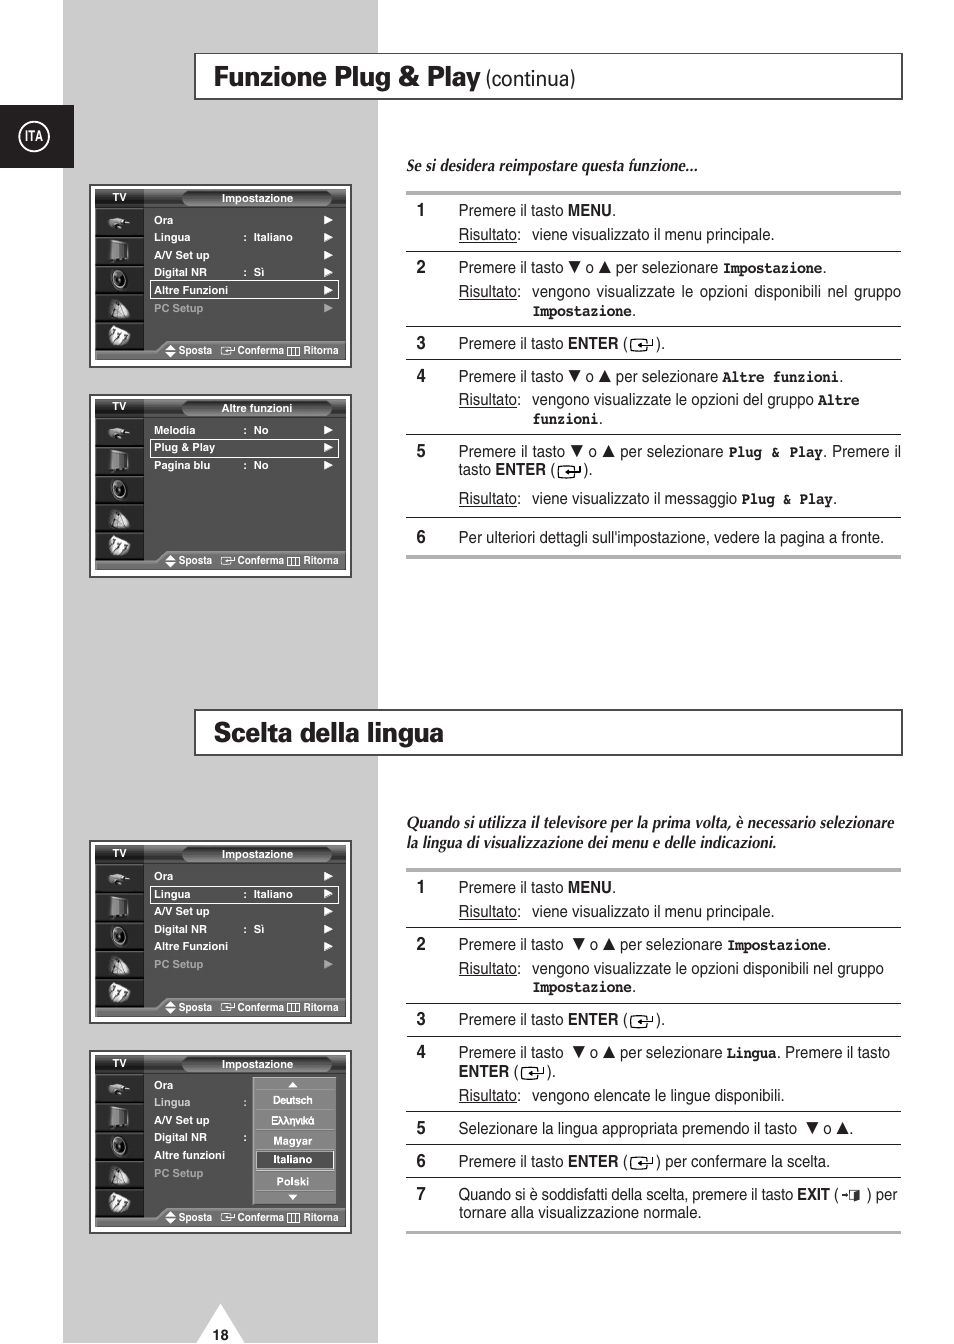 Funzione plug & play, Scelta della lingua, Continua) | Samsung PS-42D4S Manuale d'uso | Pagina 18 / 64